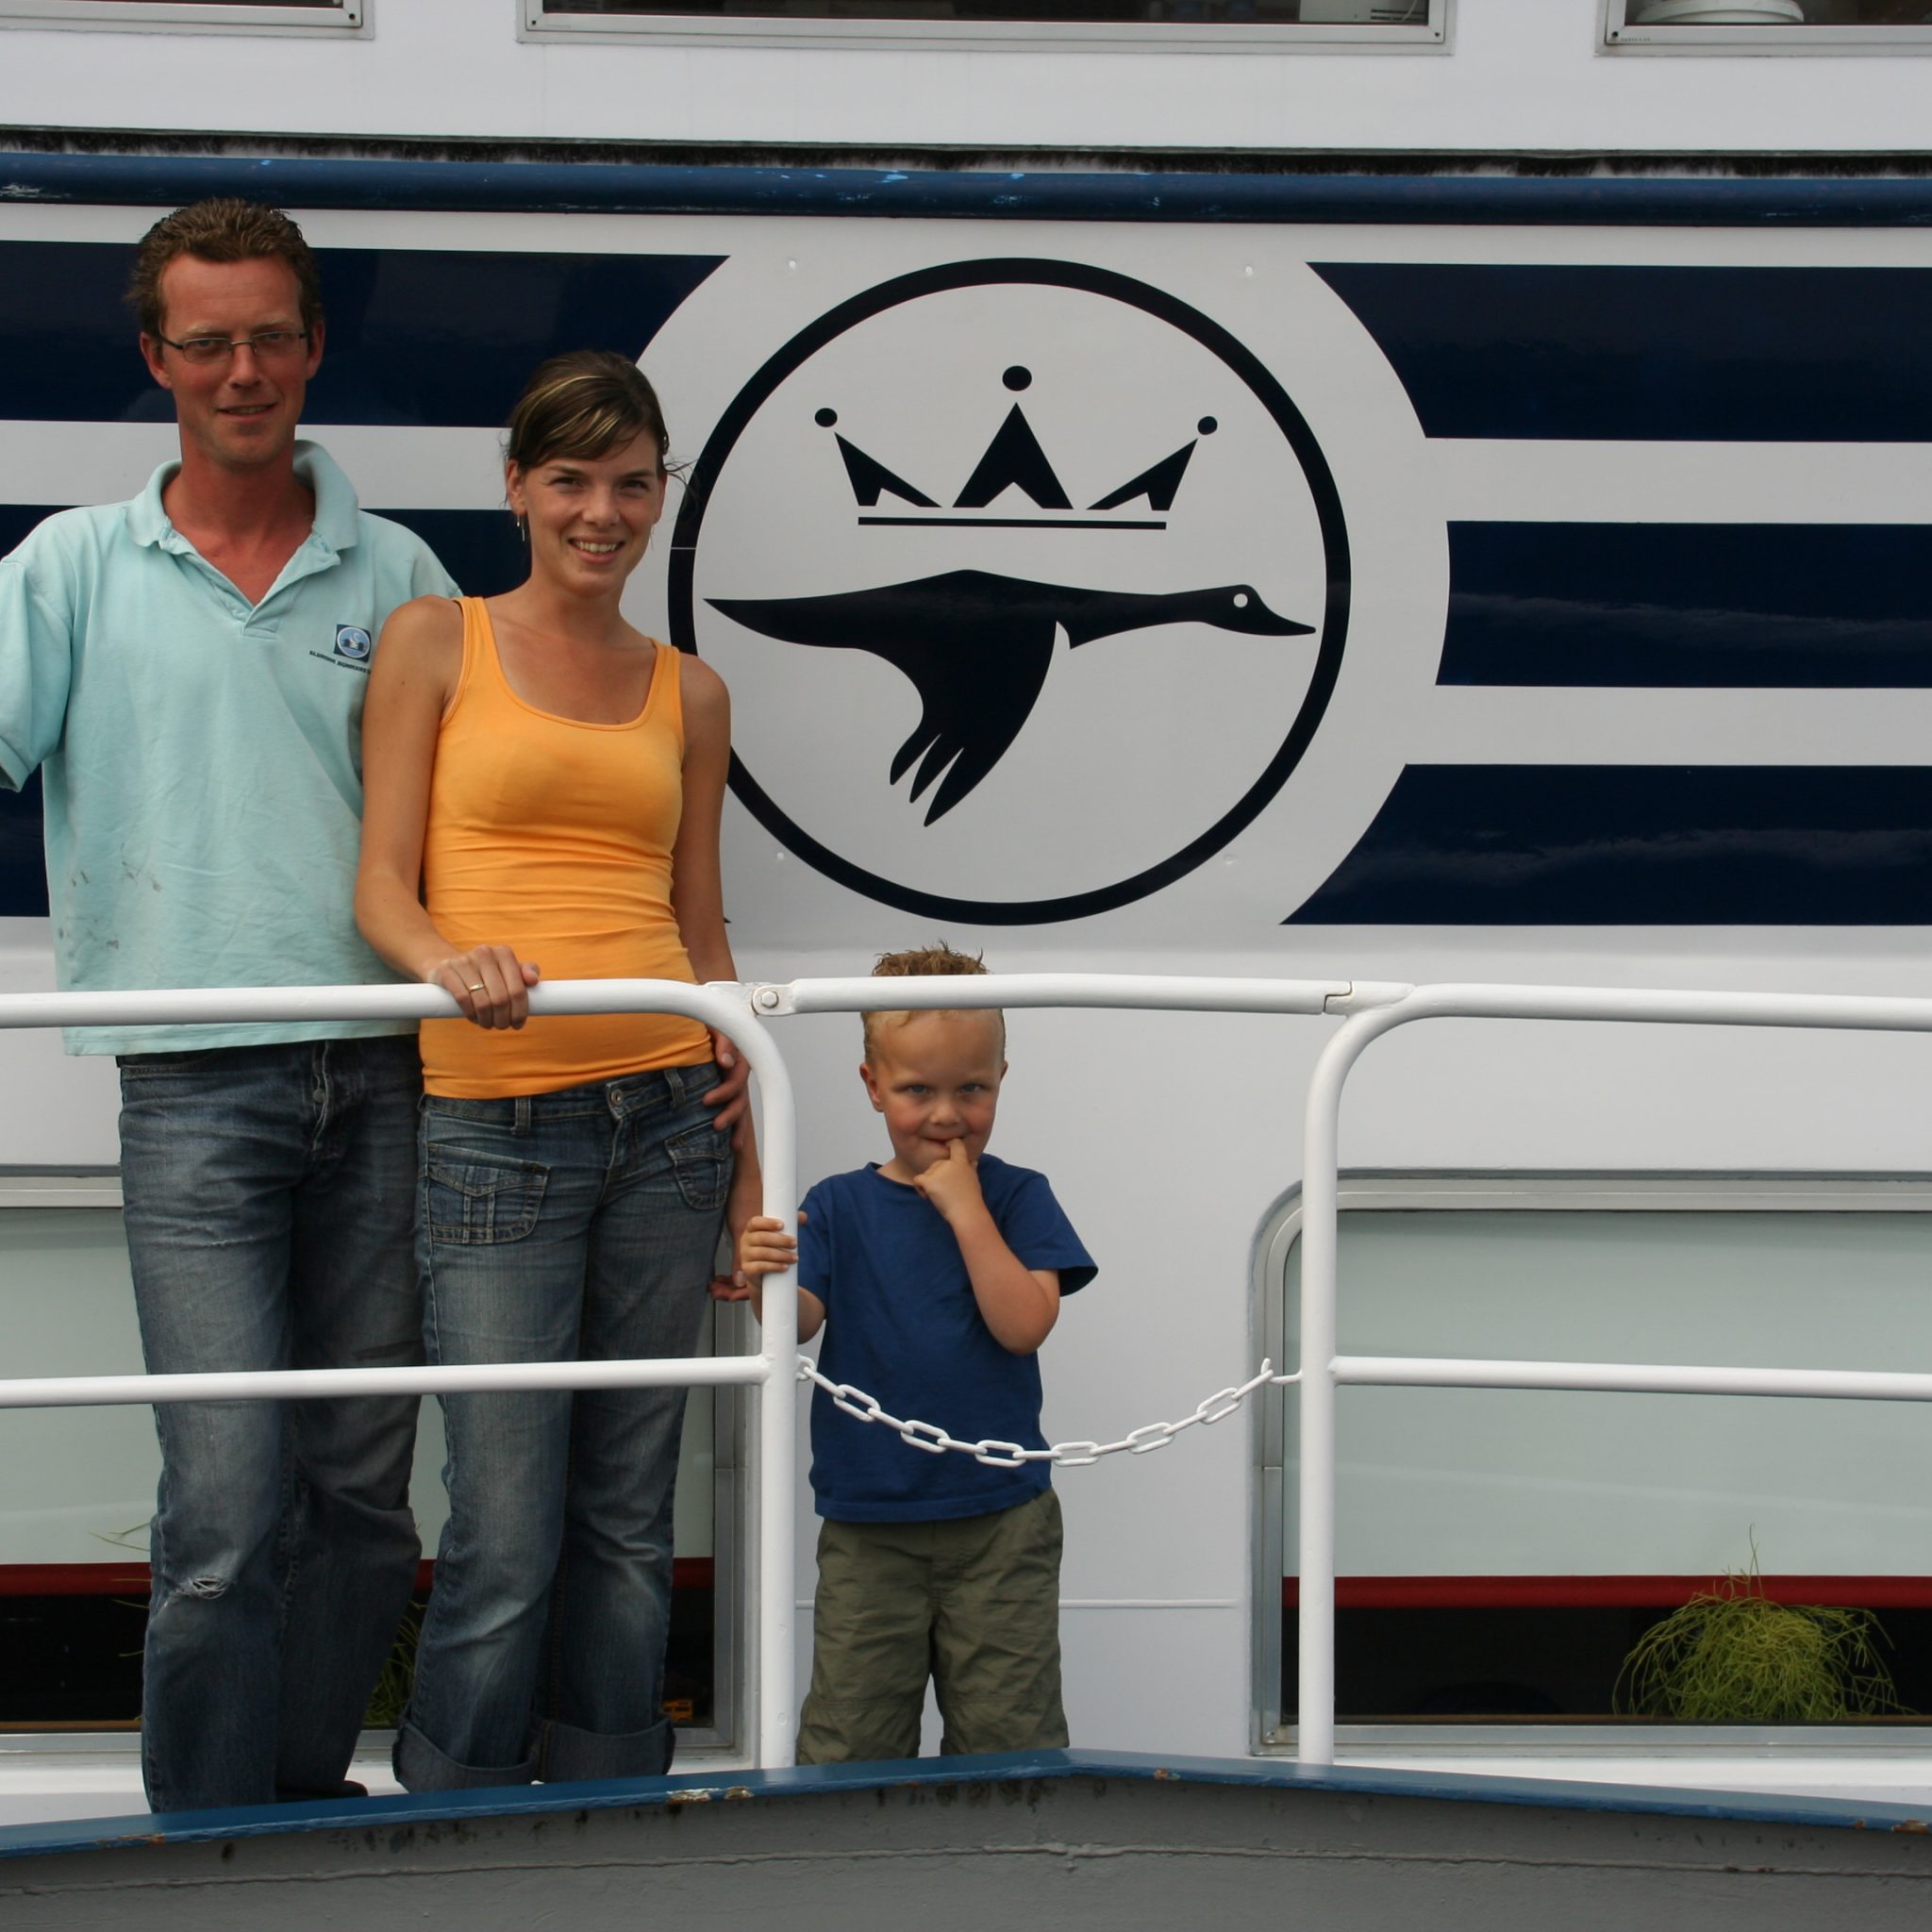 Binnenvaart praktischer met gezin dan zeevaart